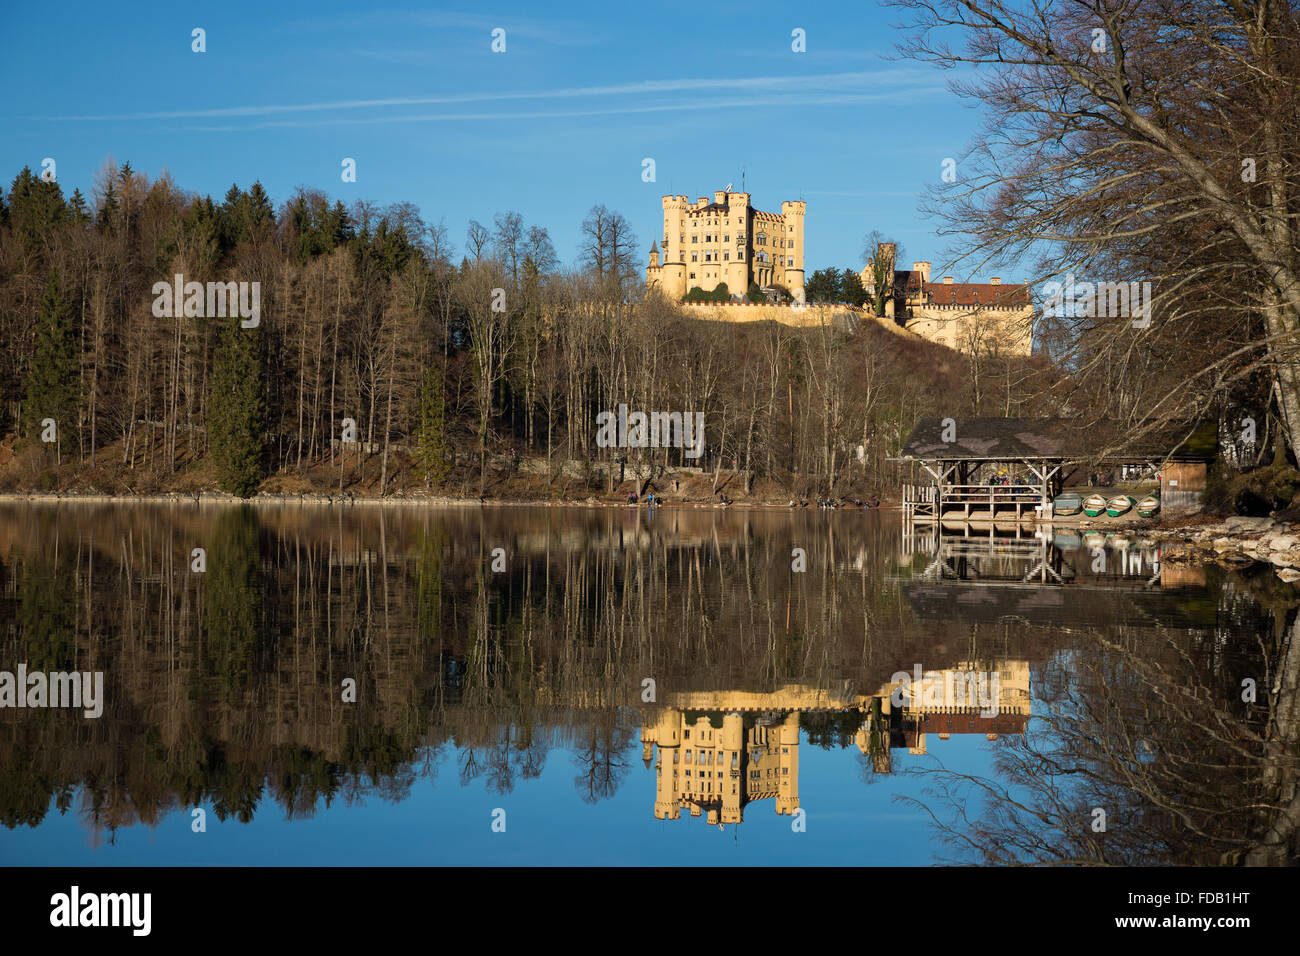 Schloss Hohenschwangau bei Füssen, Deutschland (Germany) Stock Photo